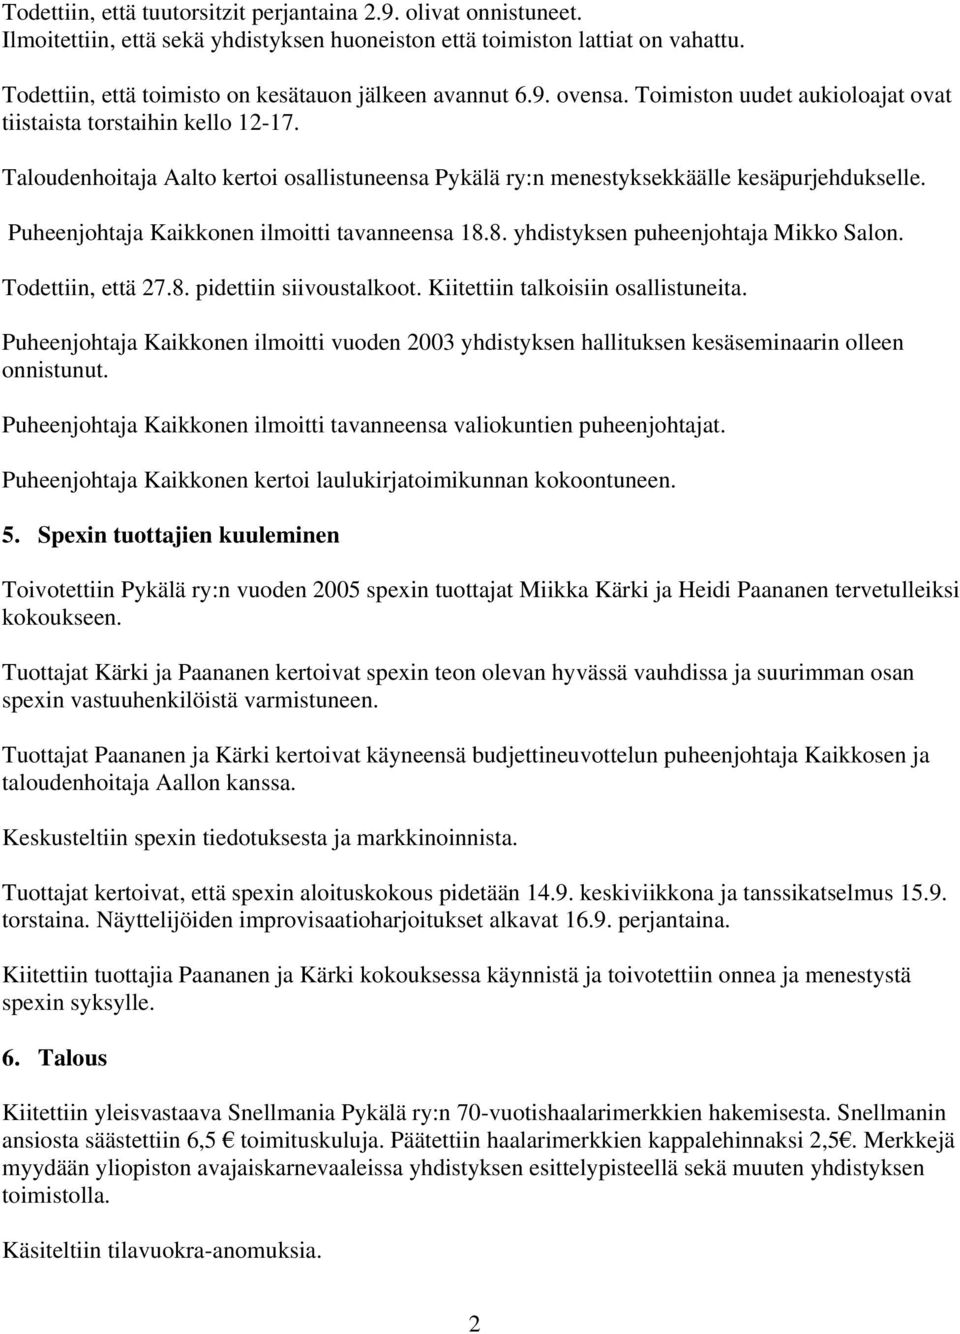 Taloudenhoitaja Aalto kertoi osallistuneensa Pykälä ry:n menestyksekkäälle kesäpurjehdukselle. Puheenjohtaja Kaikkonen ilmoitti tavanneensa 18.8. yhdistyksen puheenjohtaja Mikko Salon.